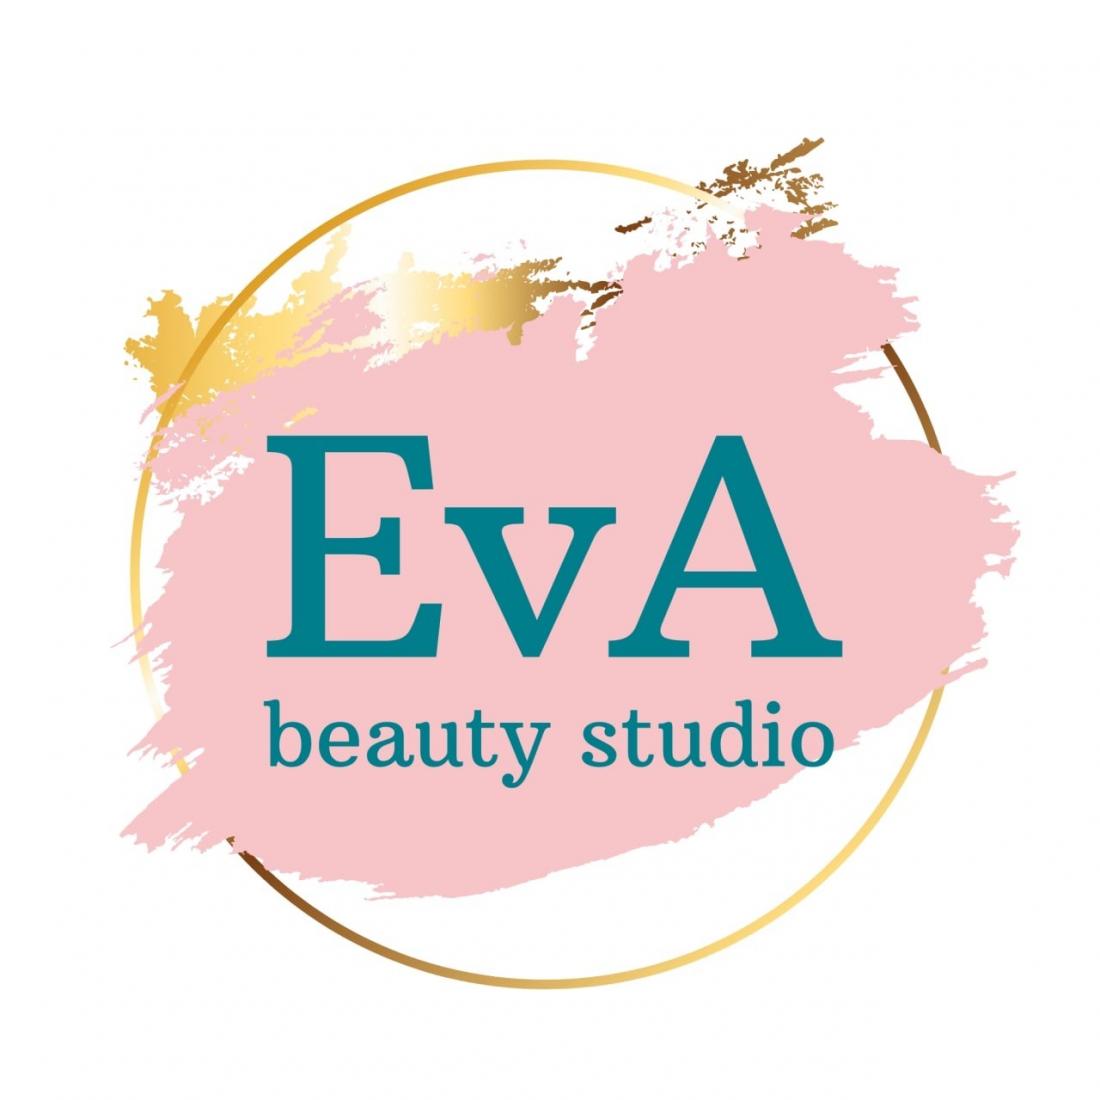 Коррекция, окрашивание бровей/ресниц от 9,90 р. в студии красоты "EvA"